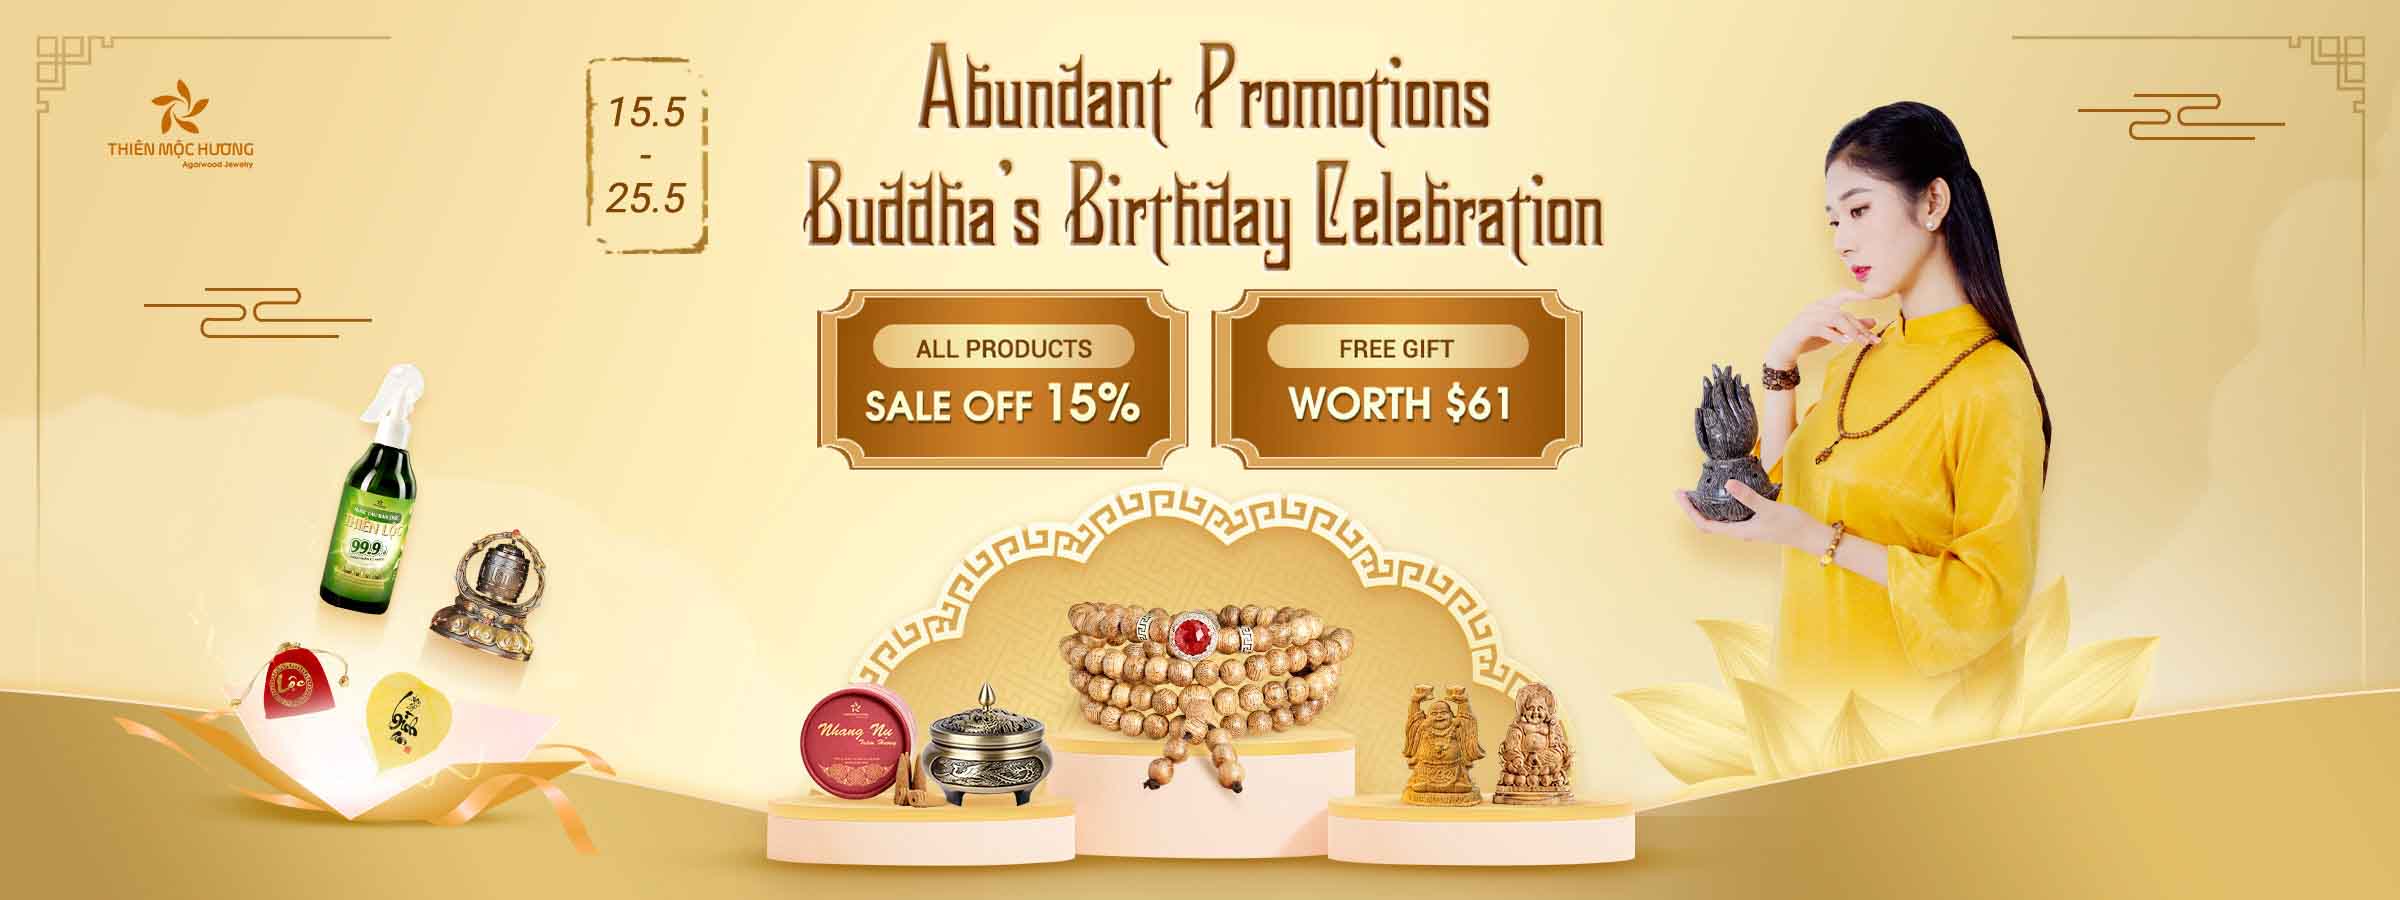 Abundant Promotions - Buddha day Lelebration